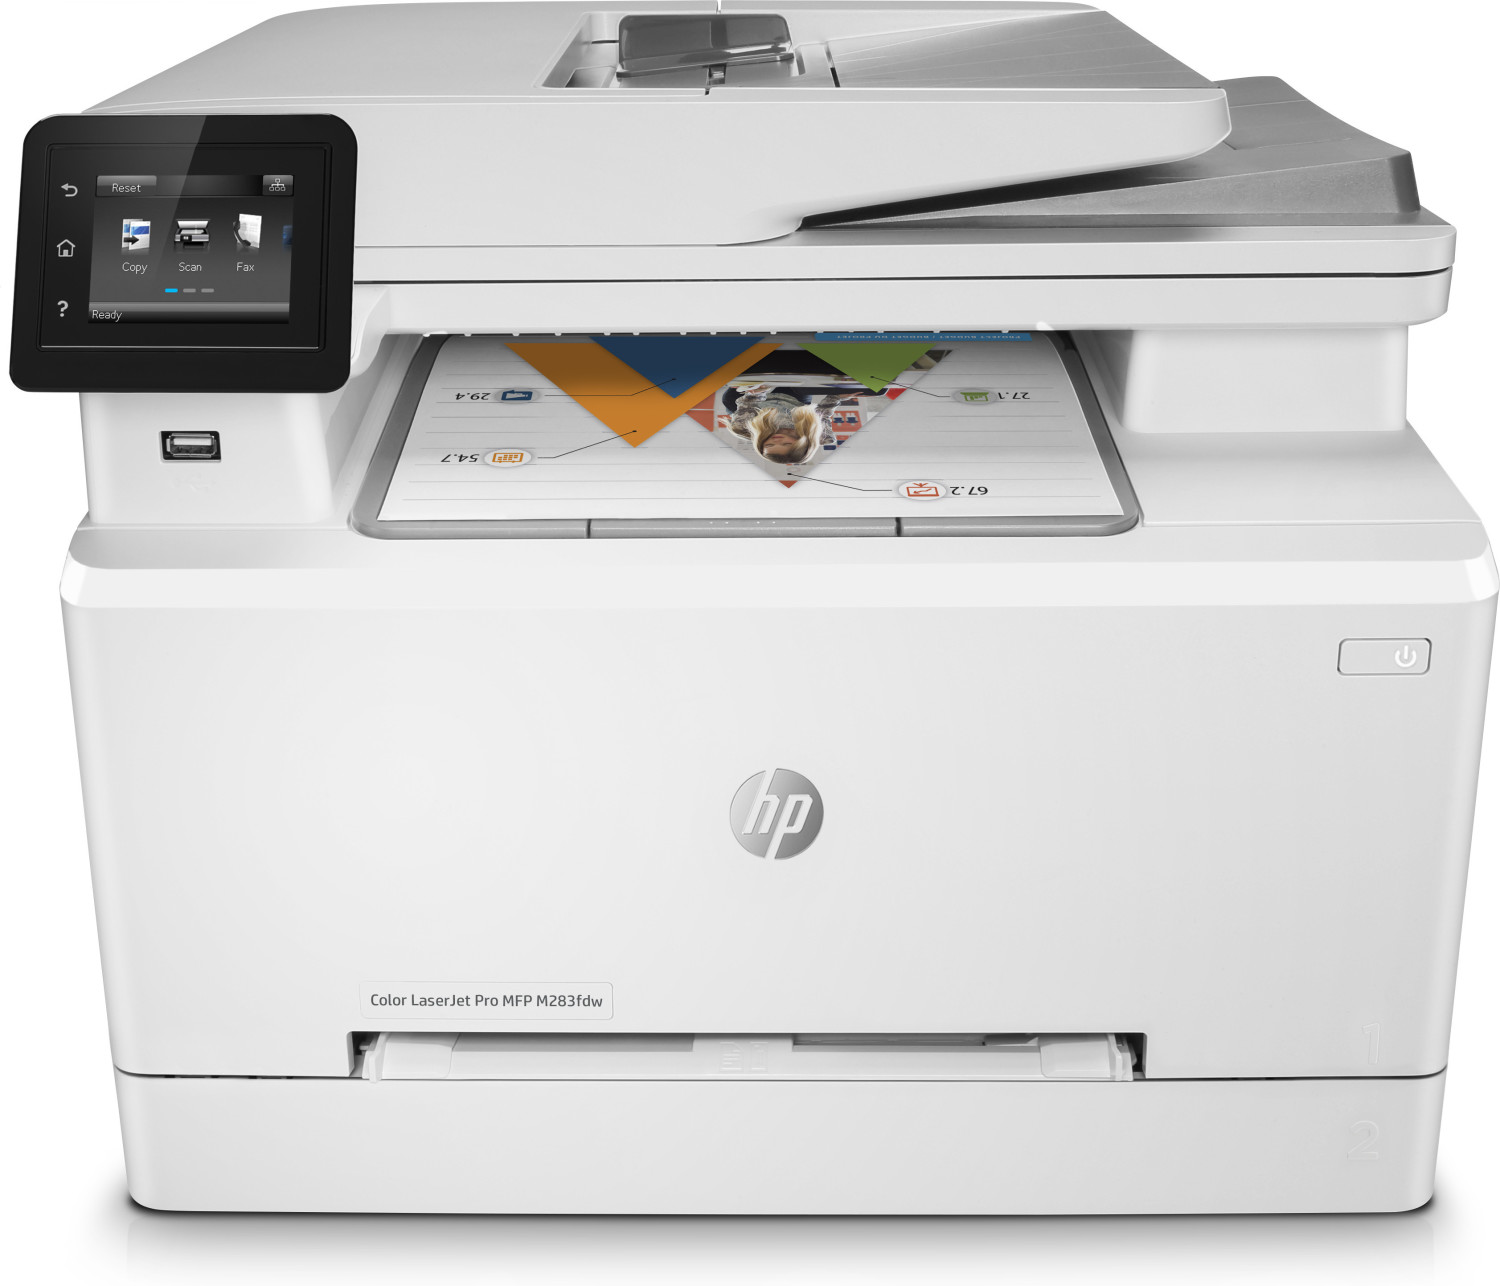 Image of HP Color LaserJet Pro Stampante multifunzione M283fdw, Colore, Stampante per Stampa, copia, scansione, fax, stampa da porta USB frontale; scansione verso e-mail; stampa fronte/retro; alimentatore automatico di documenti (ADF) da 50 fogli senza pieghe;